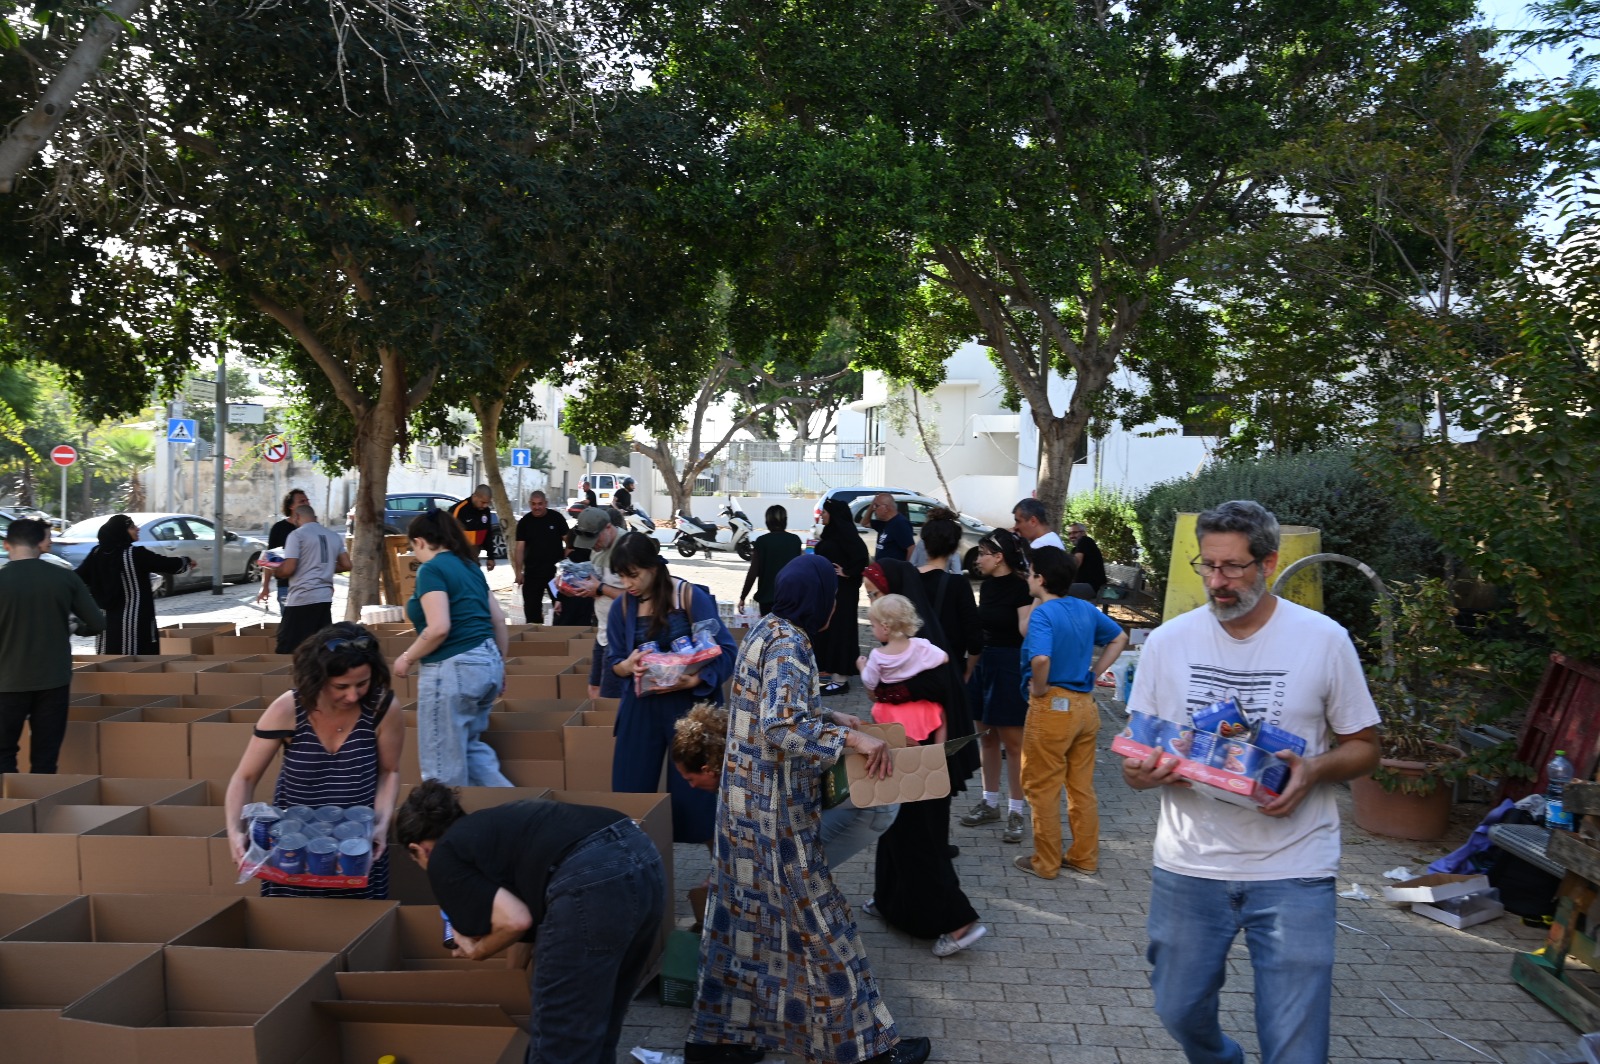 الشراكة العربية اليهودية تنفذ مشروع جمع عشرات الطرود الغذائية لتوزيعها على اهالي يافا 